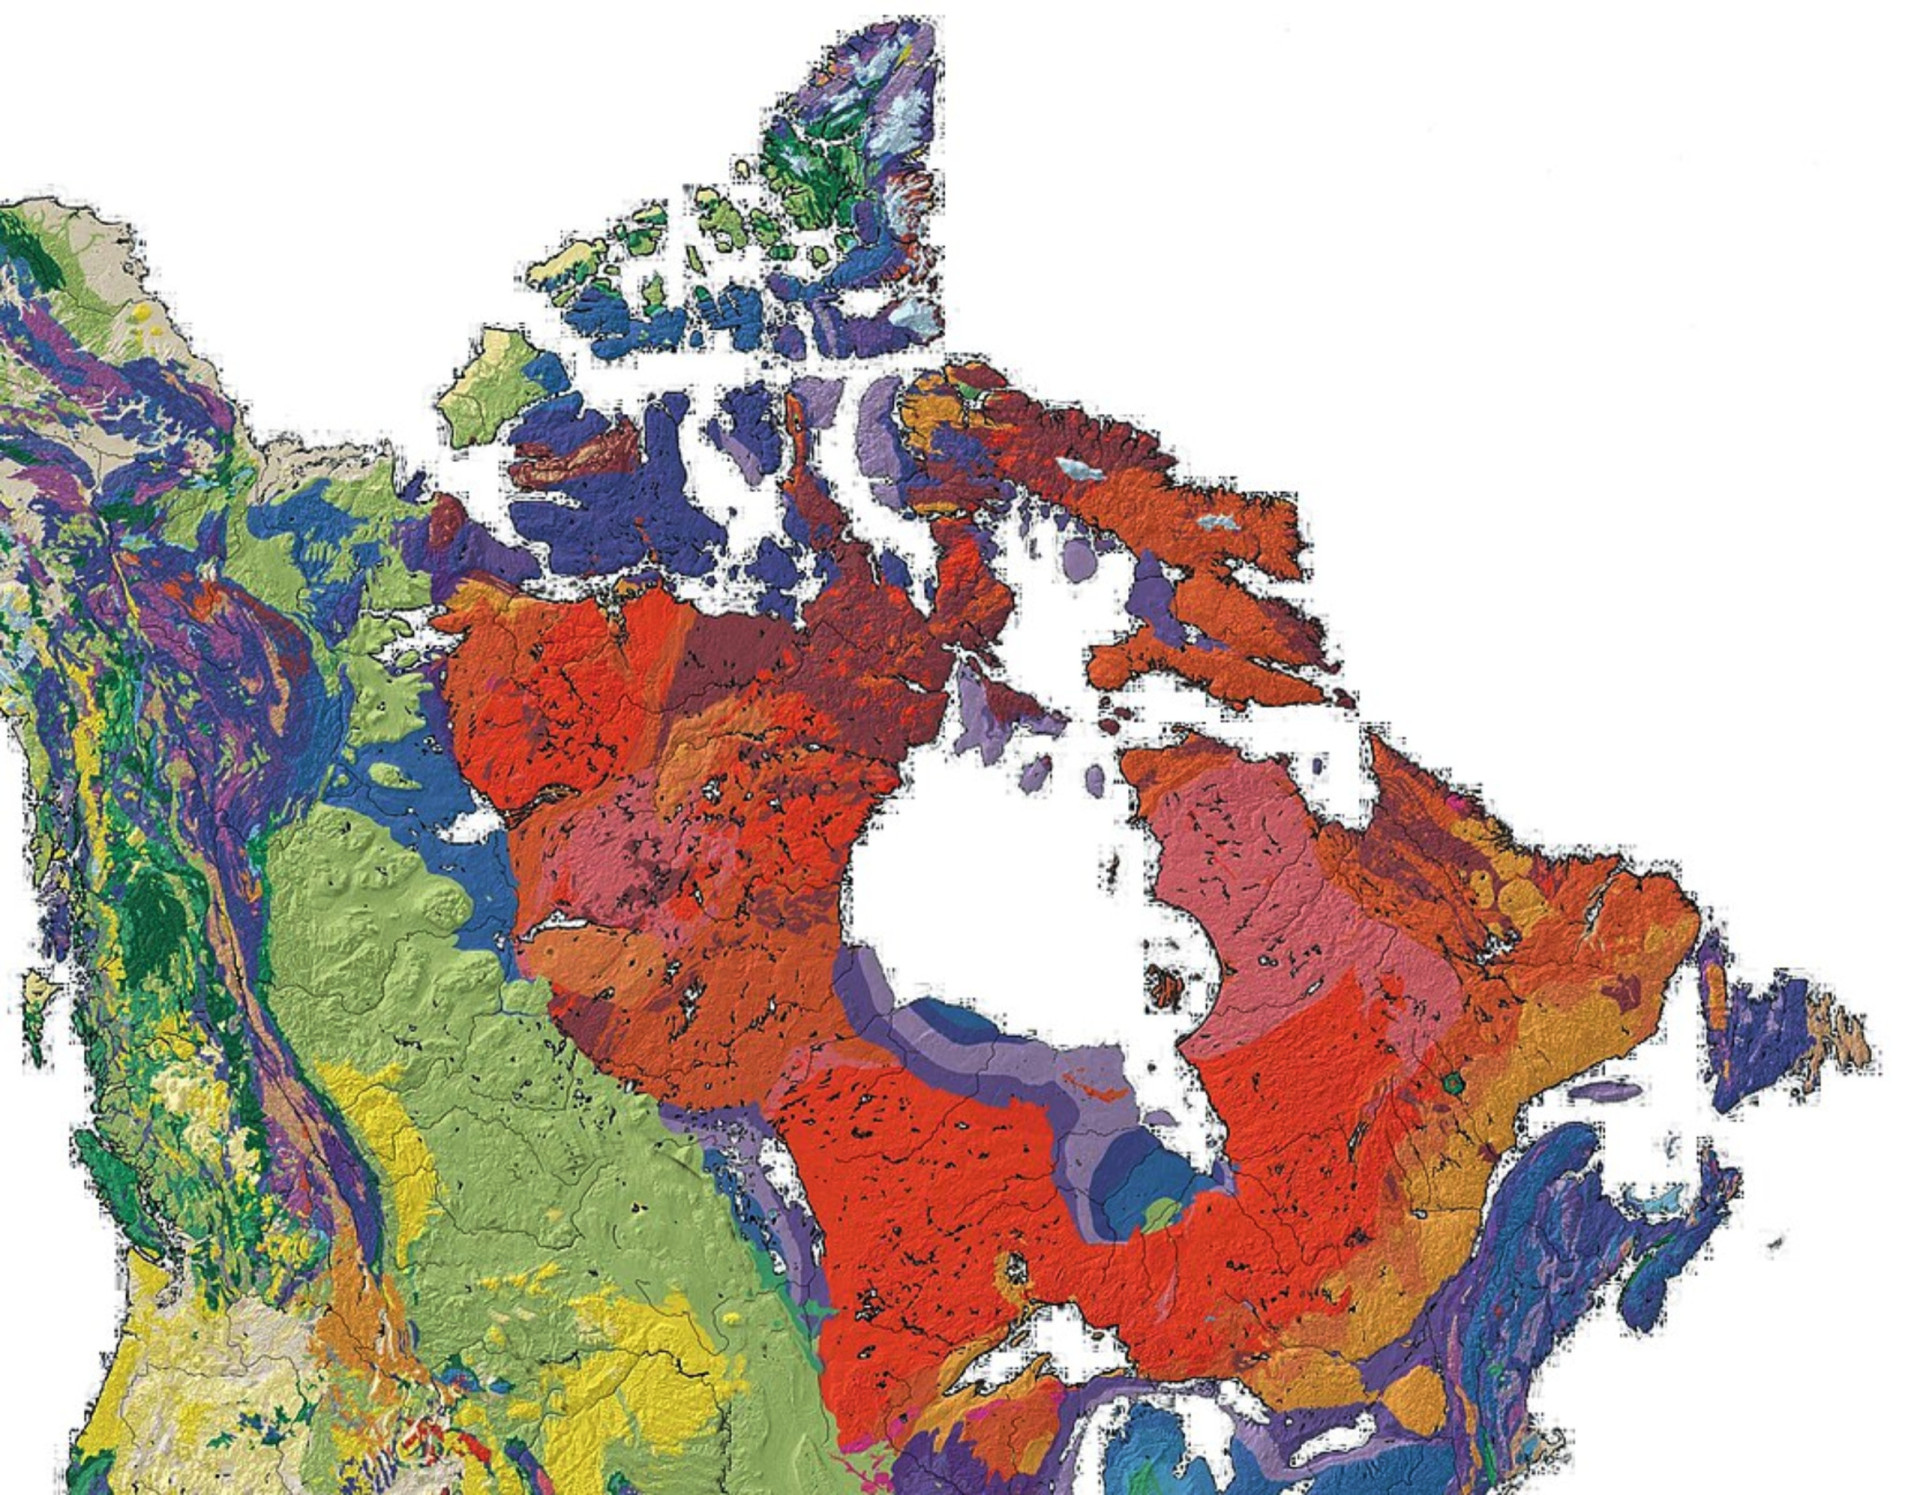 <p>Vieux d'environ 4,28 milliards d'années, le Bouclier canadien est considéré comme la plus ancienne masse continentale de la planète.</p><p><a href="https://www.msn.com/fr-fr/community/channel/vid-7xx8mnucu55yw63we9va2gwr7uihbxwc68fxqp25x6tg4ftibpra?cvid=94631541bc0f4f89bfd59158d696ad7e">Suivez-nous et accédez tous les jours à du contenu exclusif</a></p>